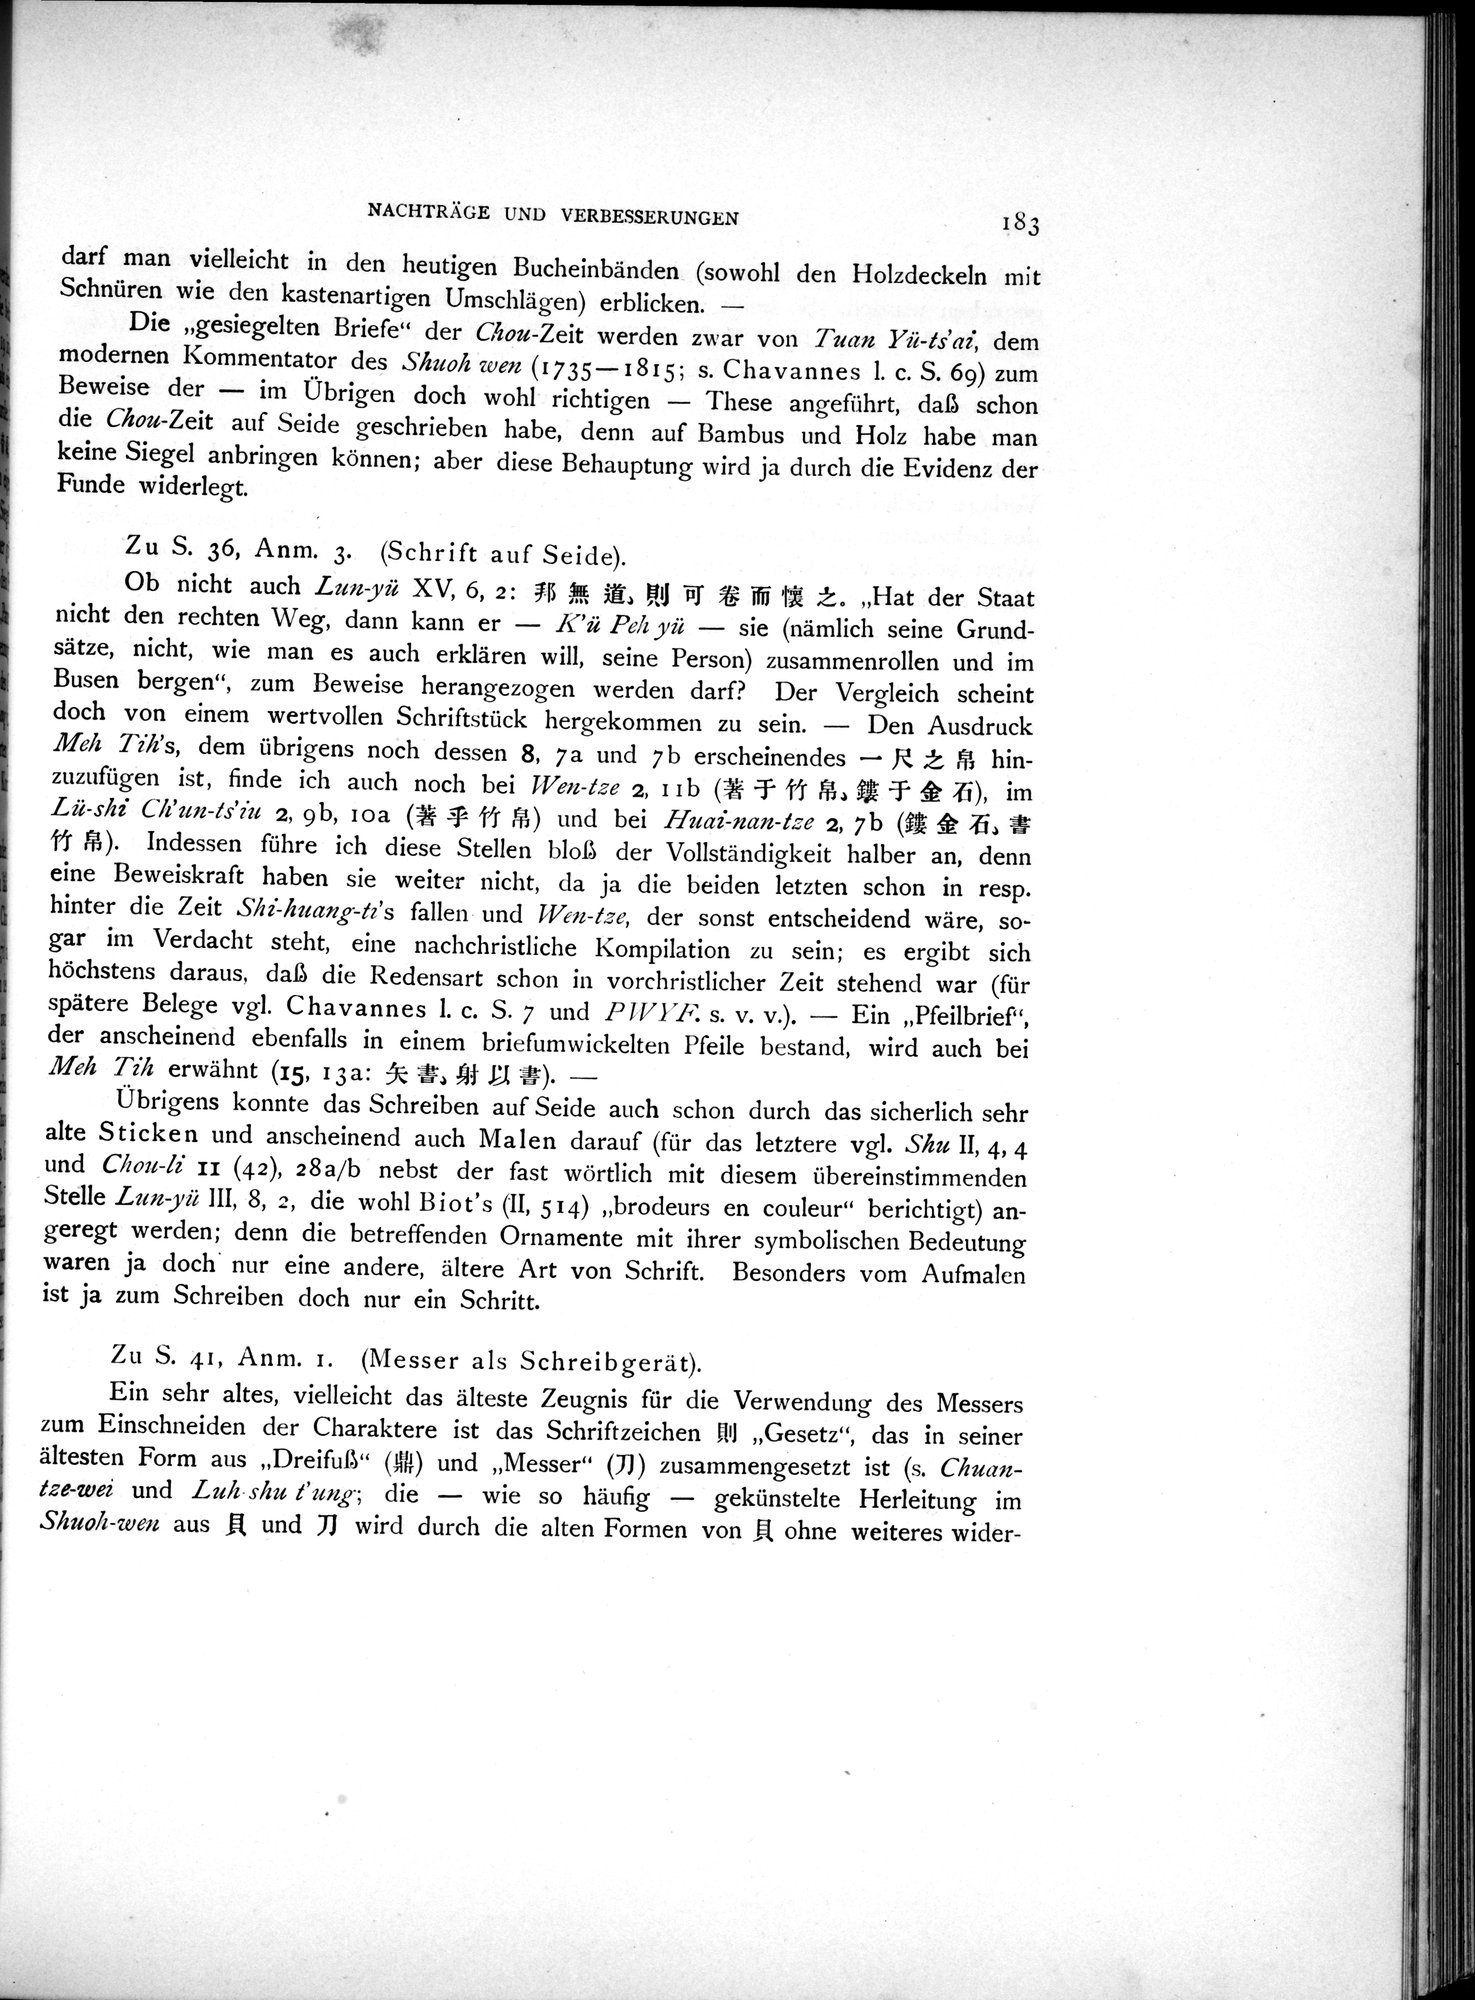 Die Chinesischen Handschriften- und sonstigen Kleinfunde Sven Hedins in Lou-lan : vol.1 / Page 207 (Grayscale High Resolution Image)